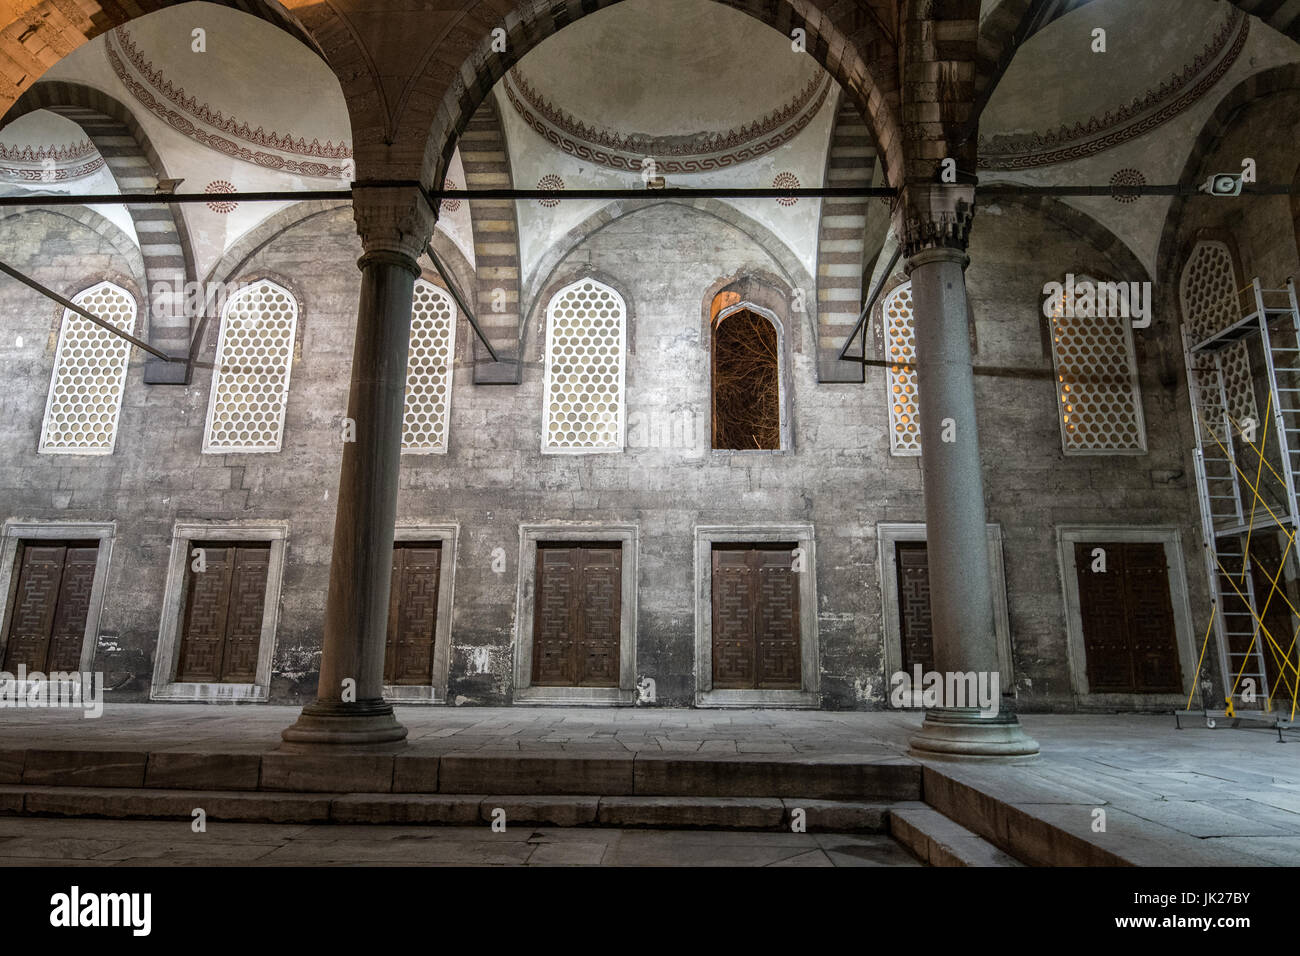 Der Hof des Sultan Ahmed Mosque oder der blauen Moschee in Istanbul, Türkei. Stockfoto